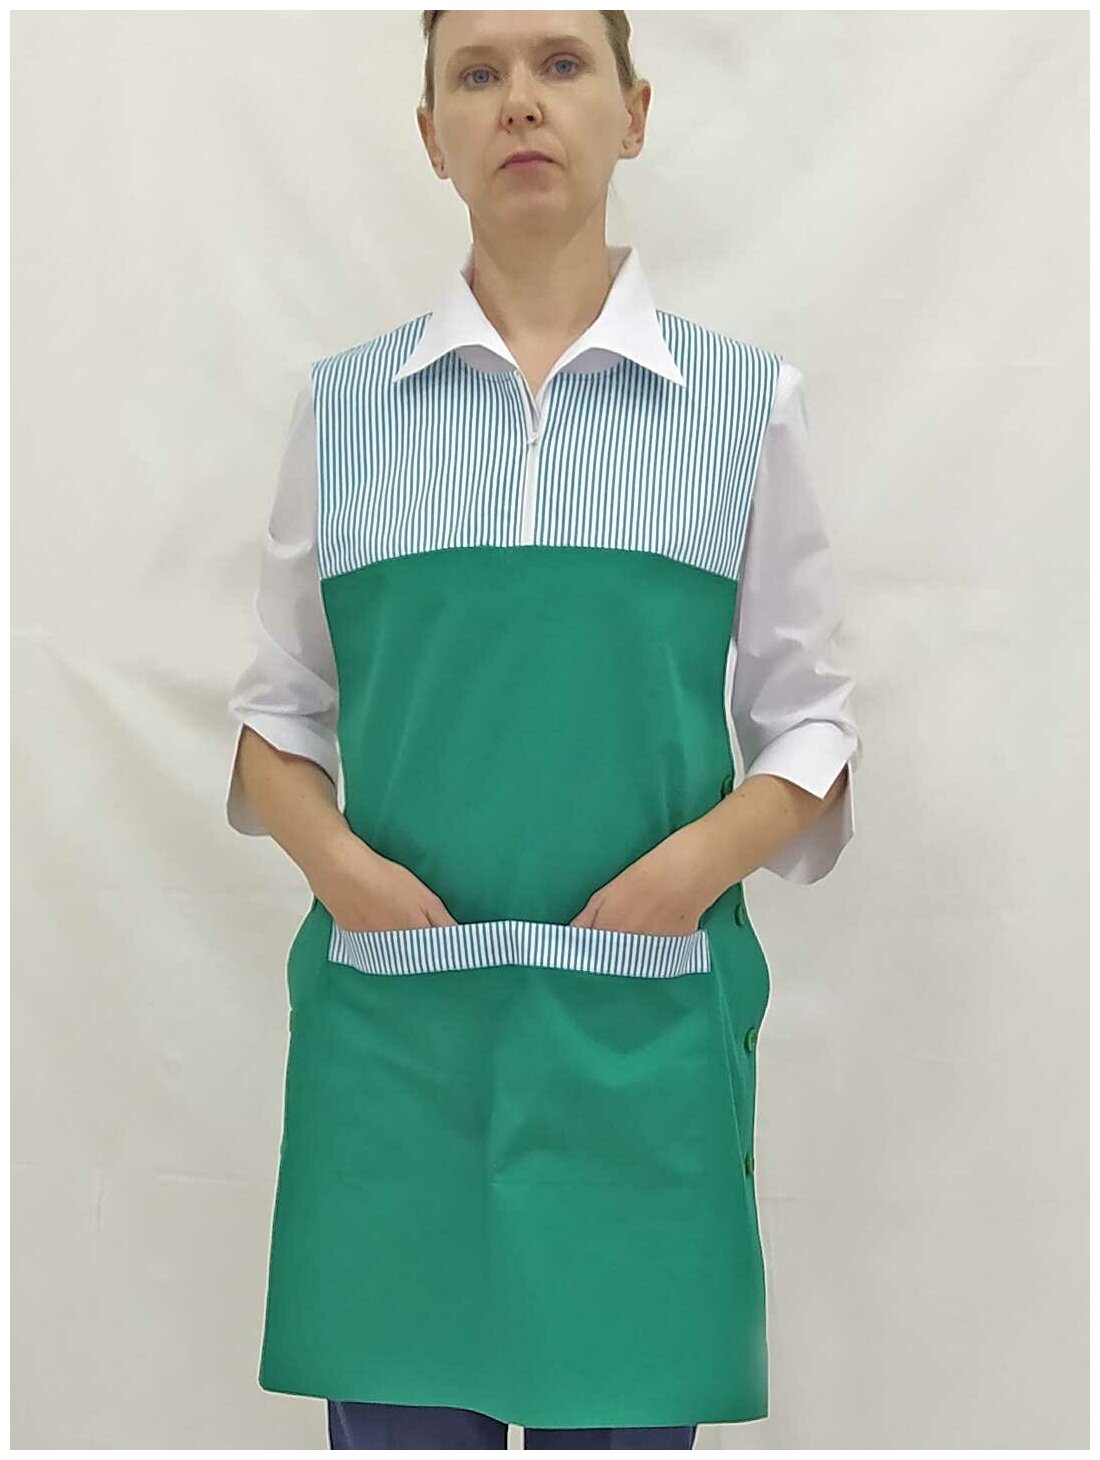 Фартук женский, производитель Фабрика швейных изделий №3, модель М-471, размер 40-42, цвет зеленый